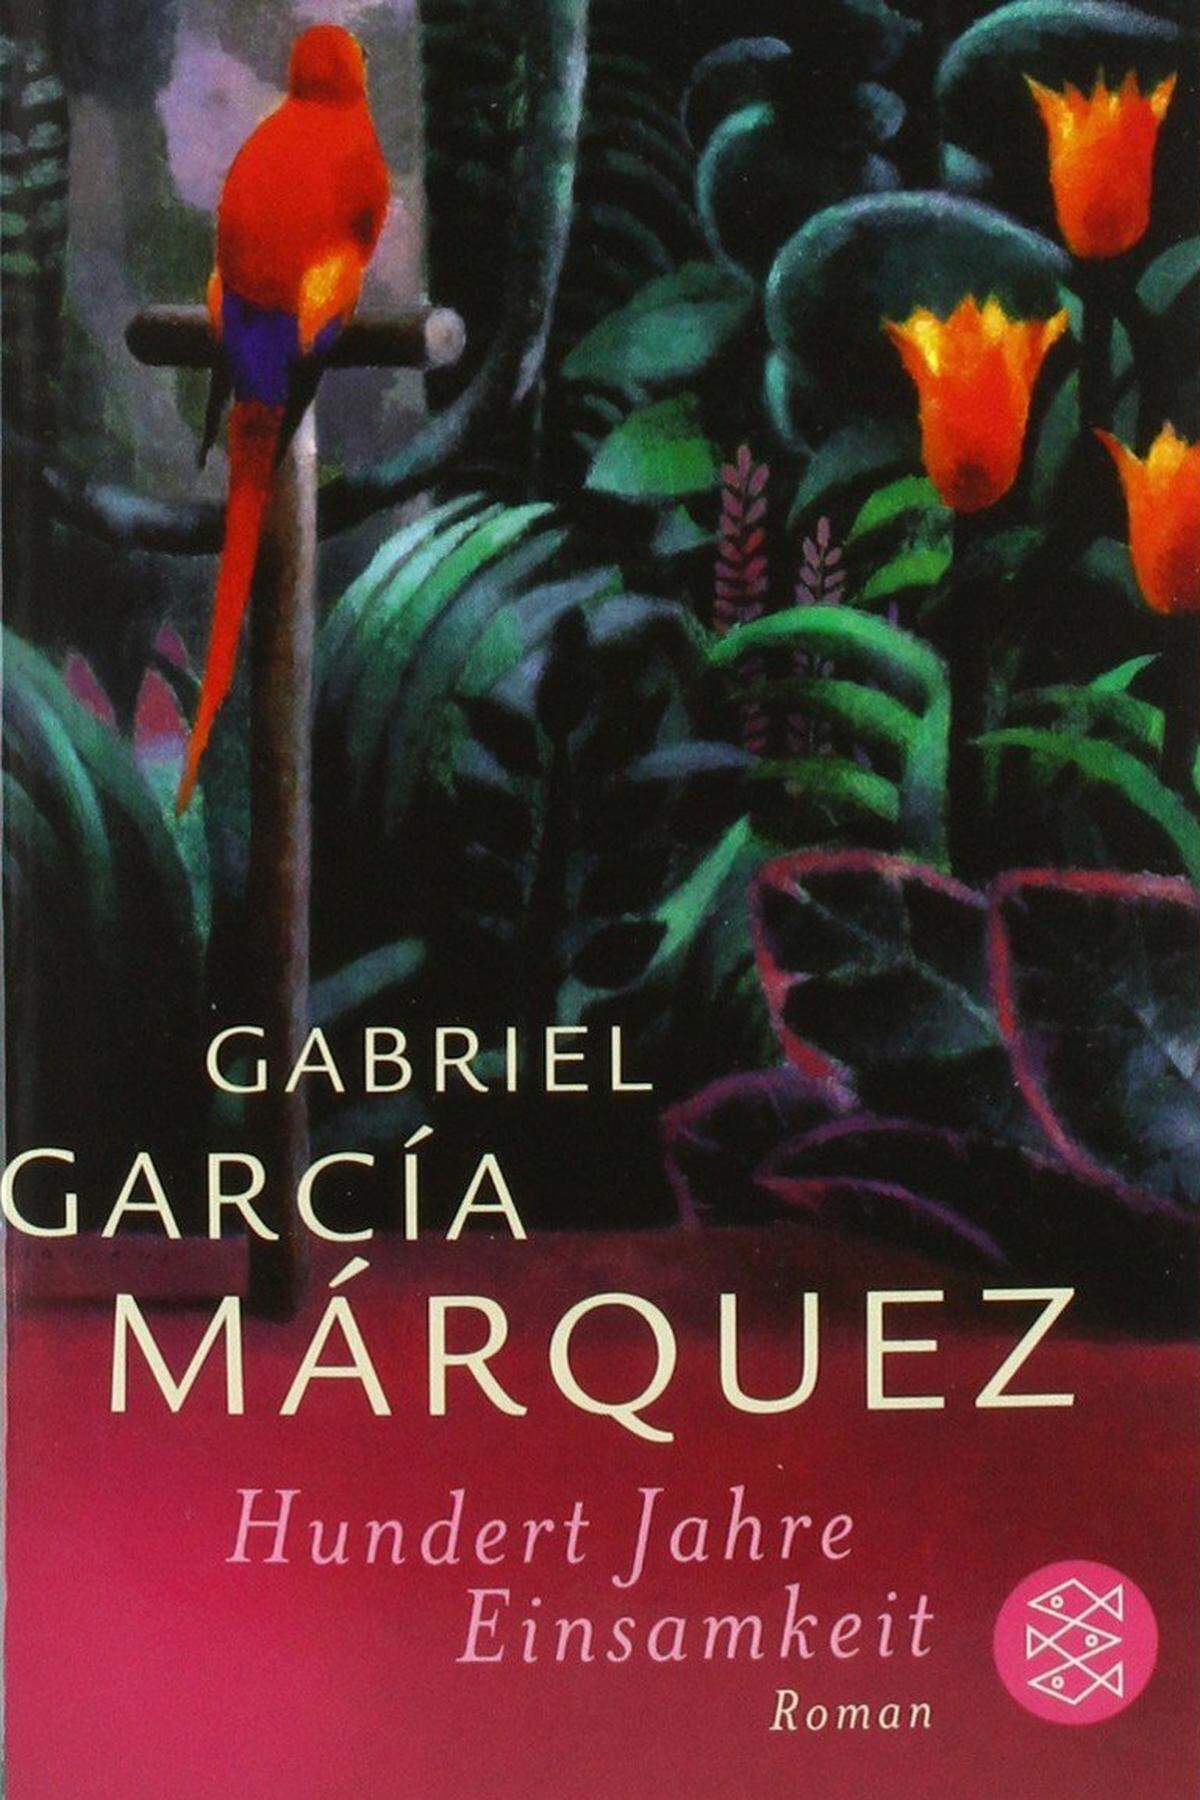 Marquez, der auch "Gabo" oder liebevoll "Gabito" genannt wurde, gilt als meistgelesener Schrifsteller Lateinamerikas:Sein berühmtestes Werk ist wohl der Roman "Hundert Jahre Einsamkeit". Die Geschichte der Familiendynastie Buendía wurde in über 25 Sprachen übersetzt und verkaufte sich global über zehn Millionen Mal.